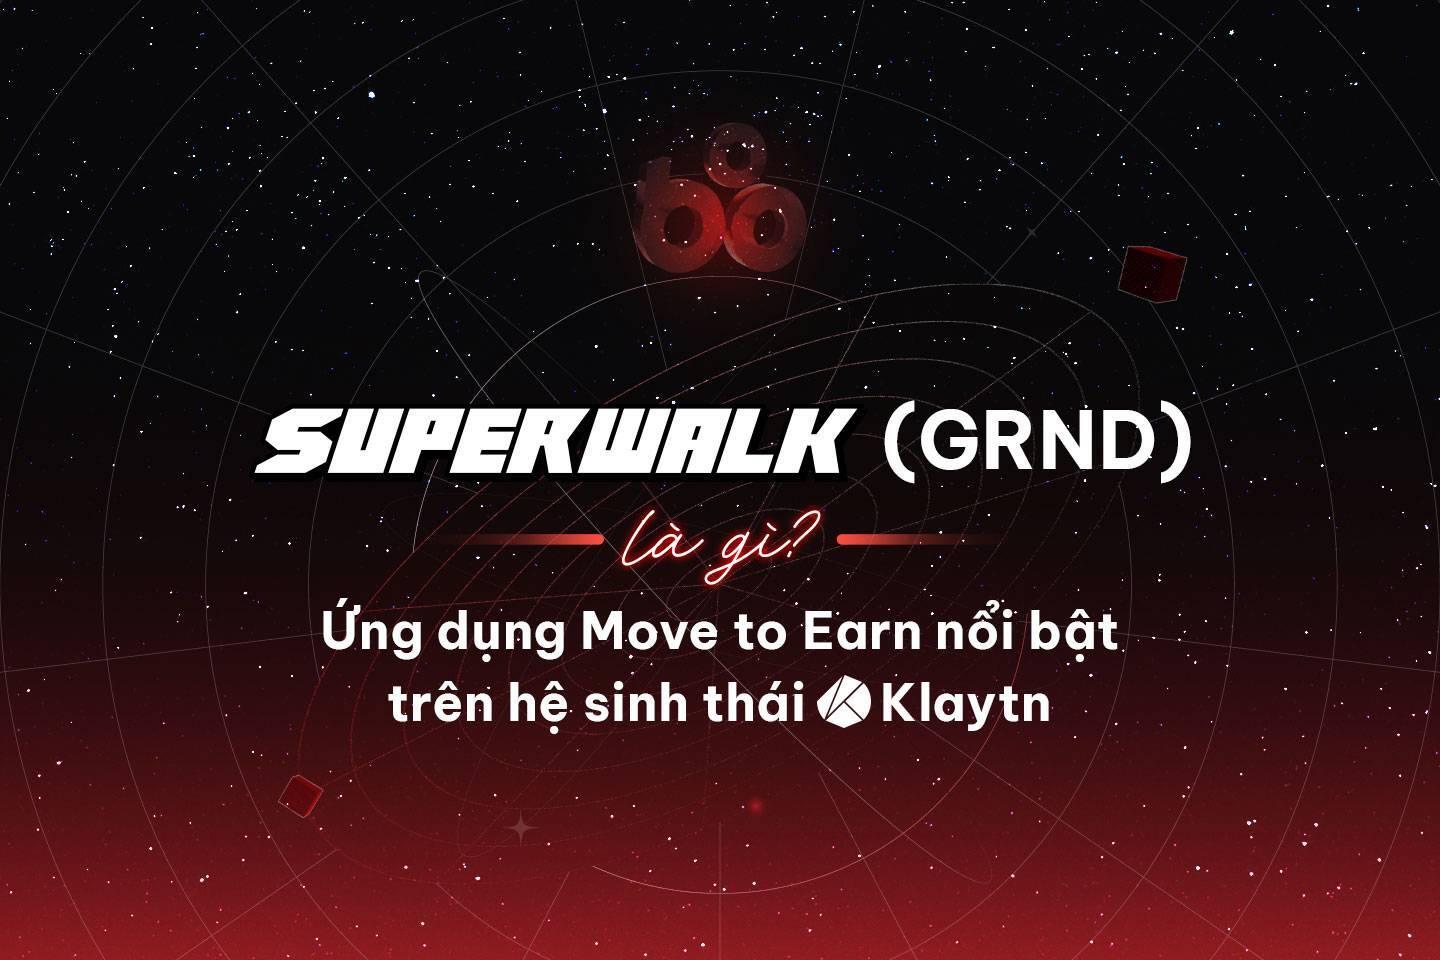 superwalk-grnd-la-gi-ung-dung-move-to-earn-noi-bat-tren-he-sinh-thai-klaytn